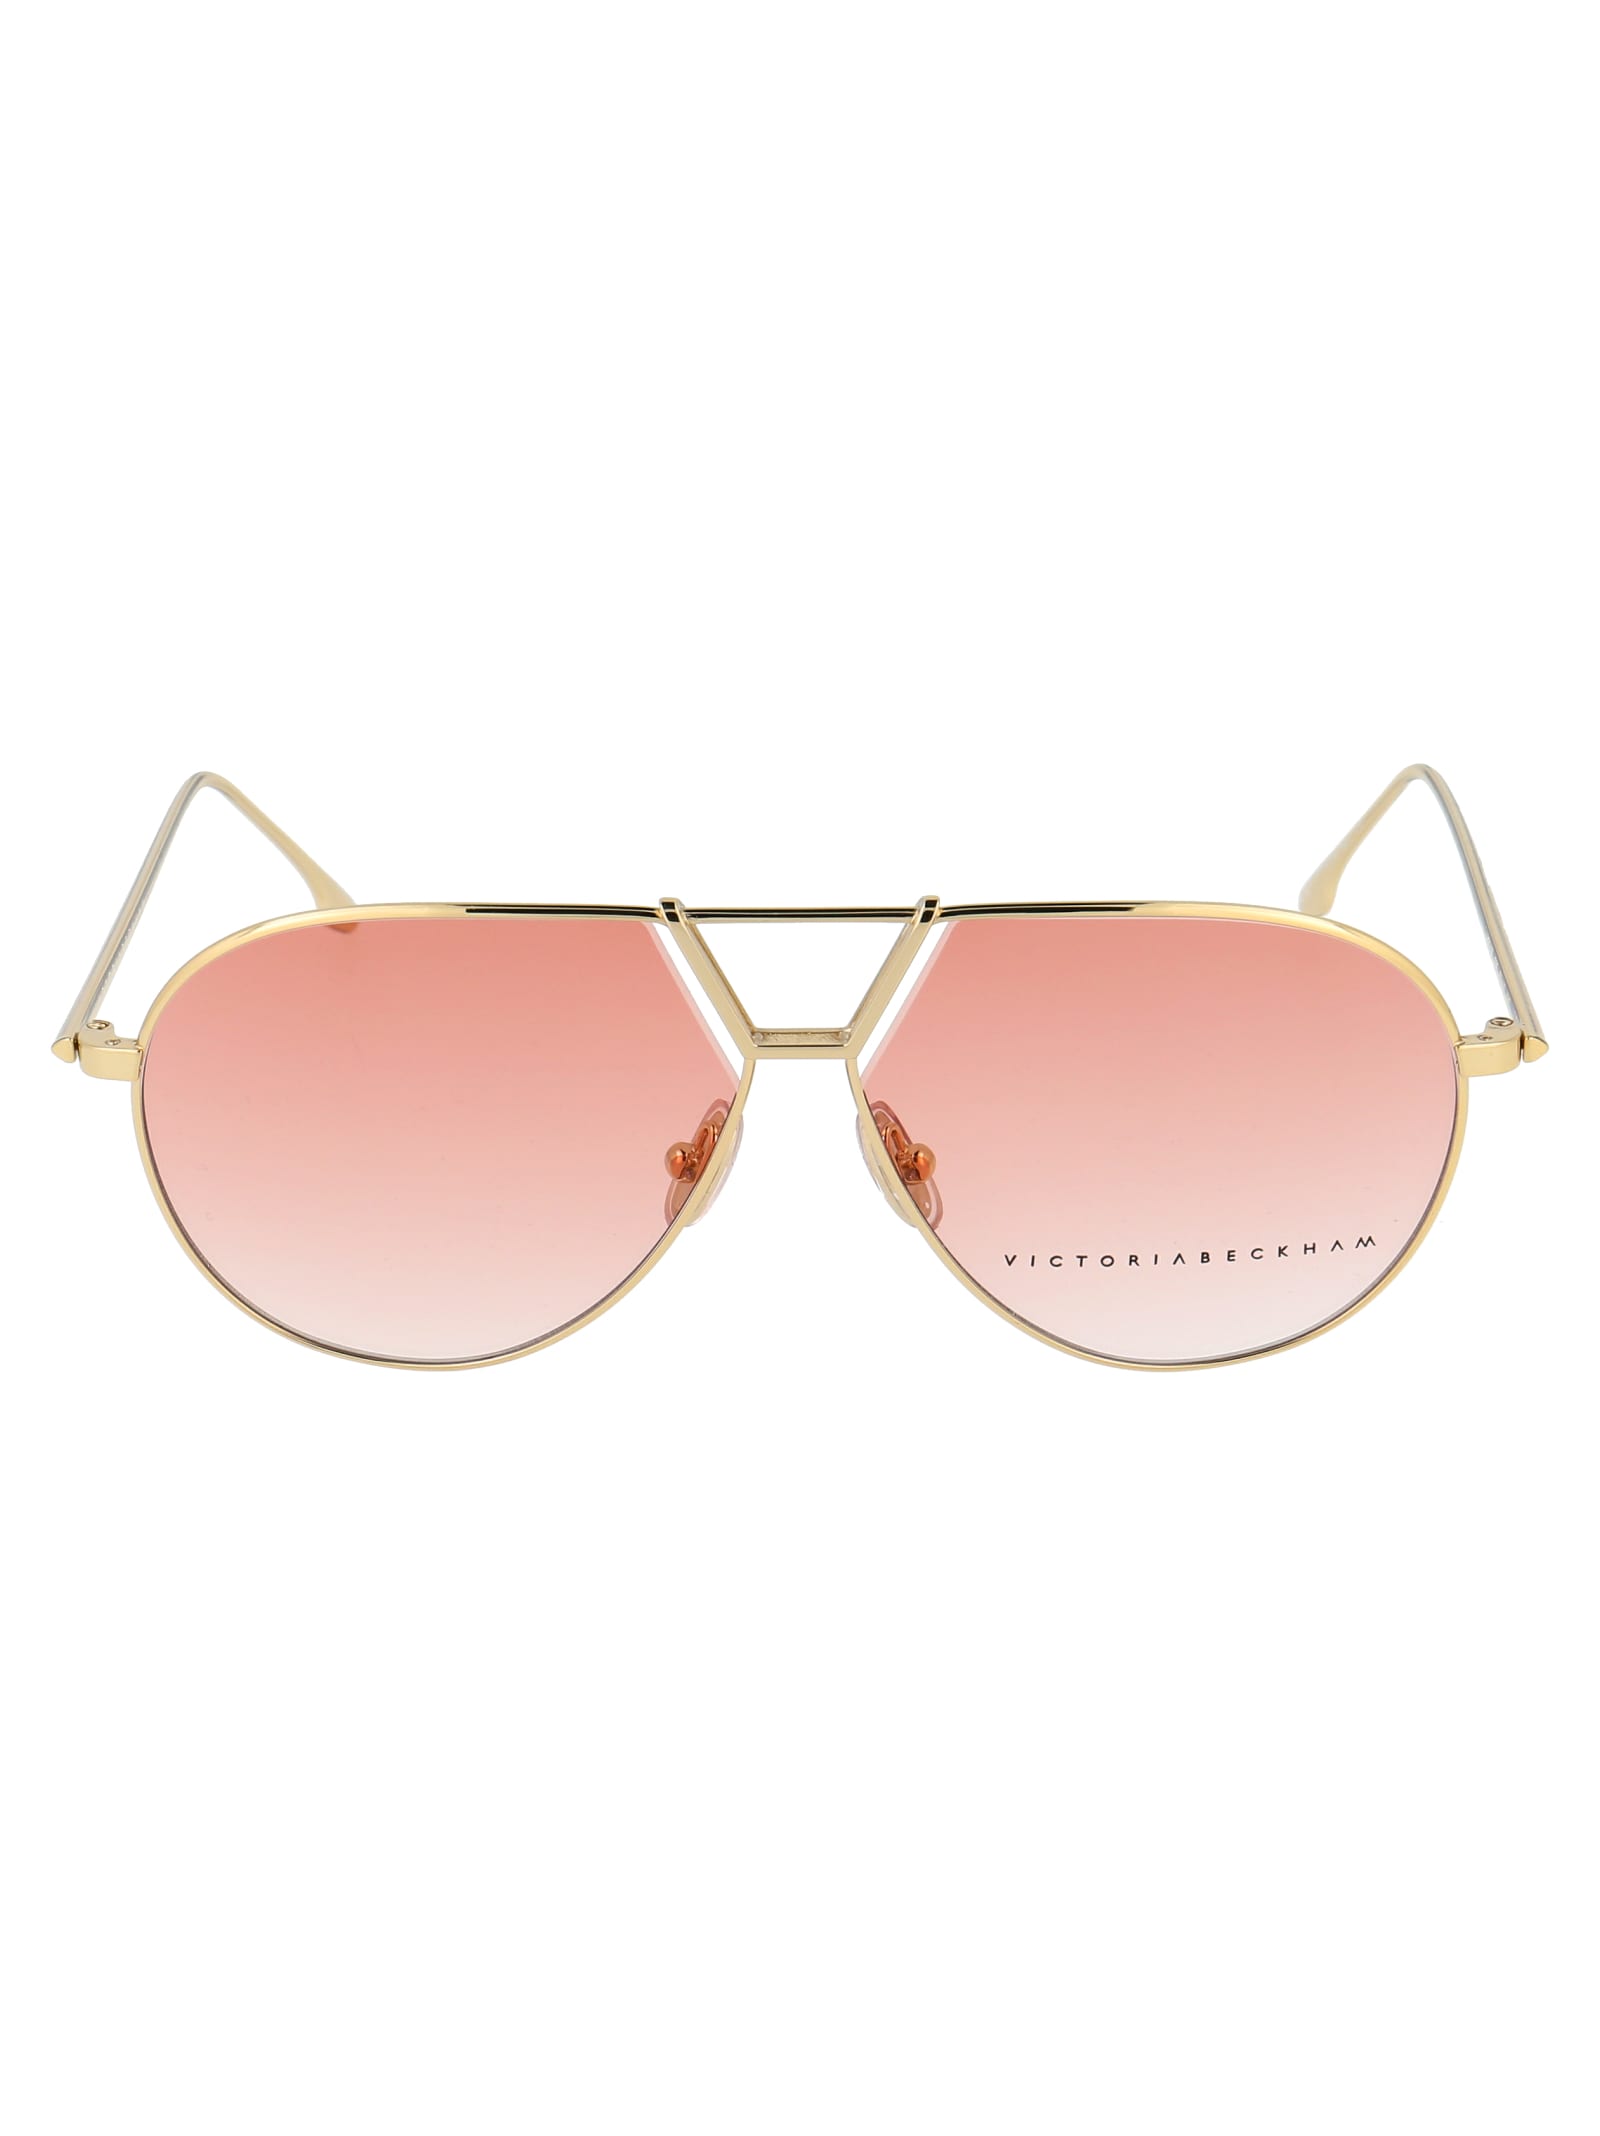 Victoria Beckham Vb2106 Sunglasses